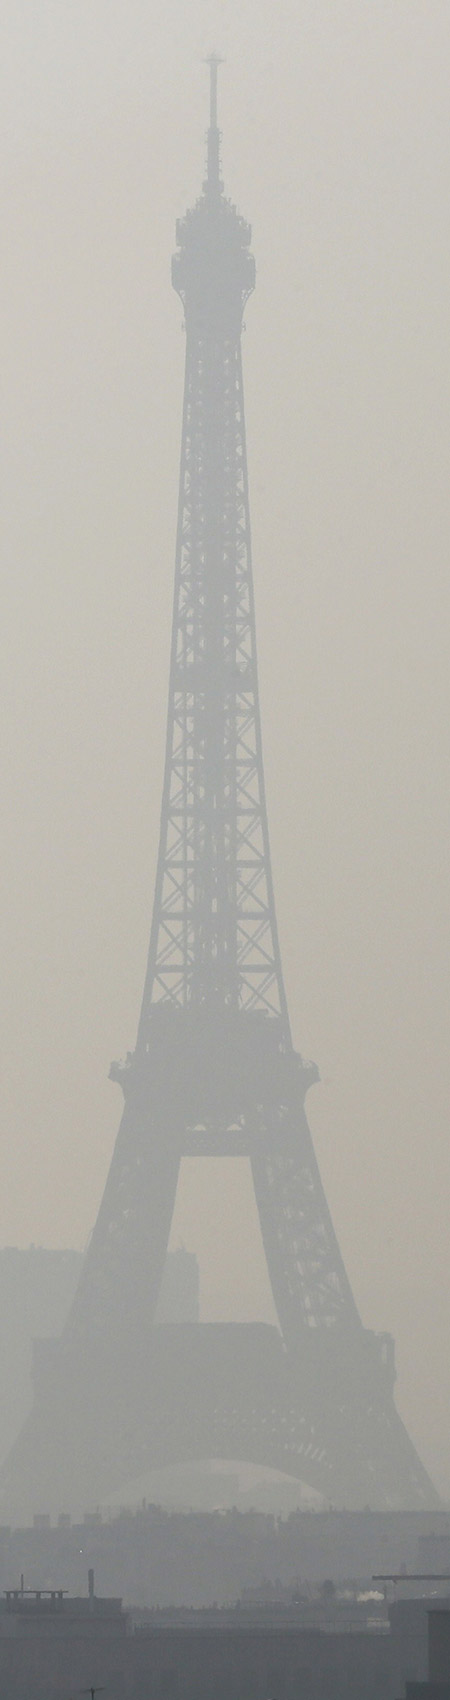 episode de pollution air Paris Tour Eiffel